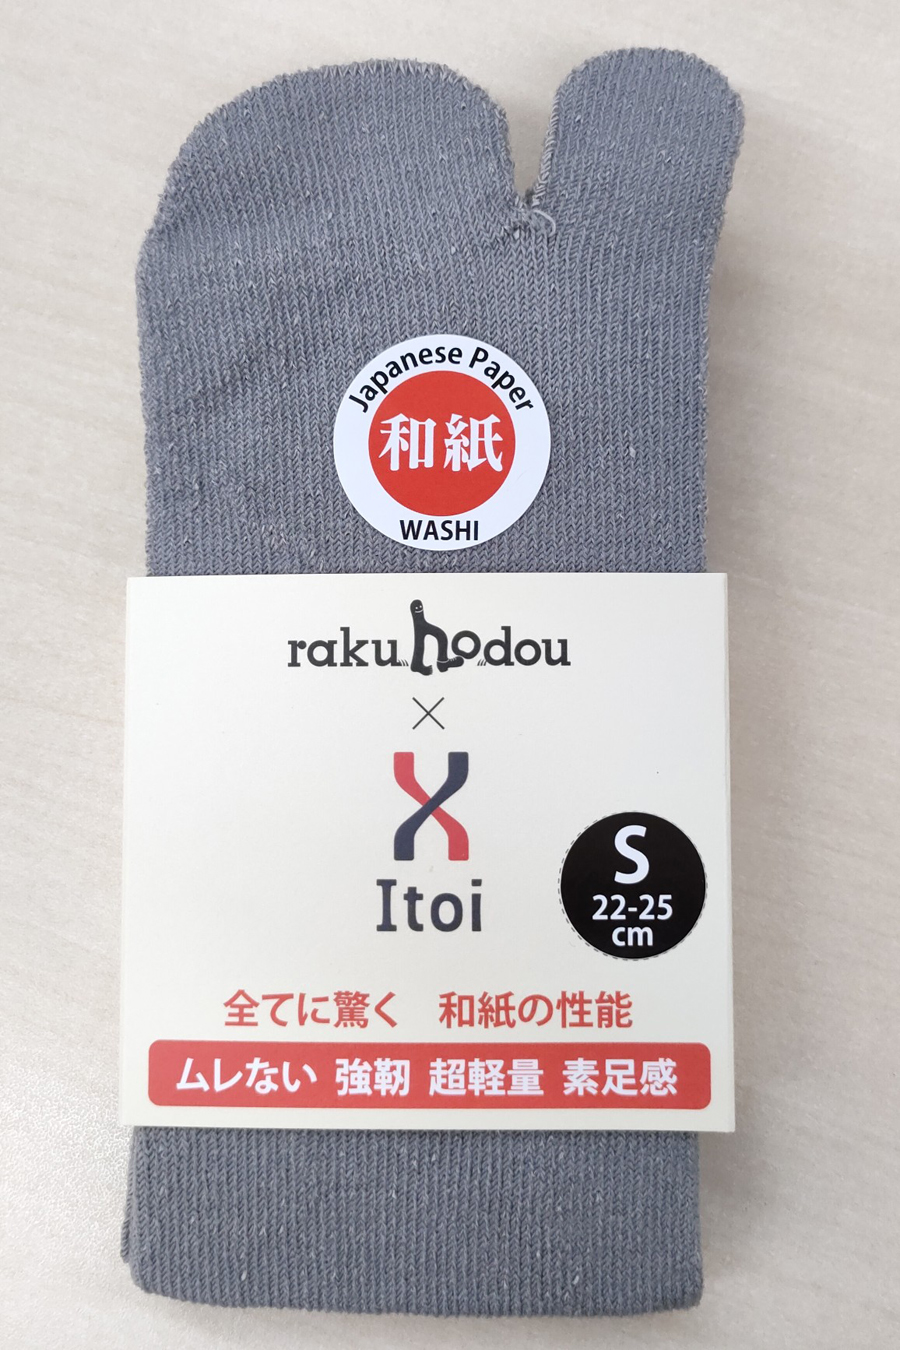 「rakuhoDry tabi 和紙ソックス」商品パッケージ